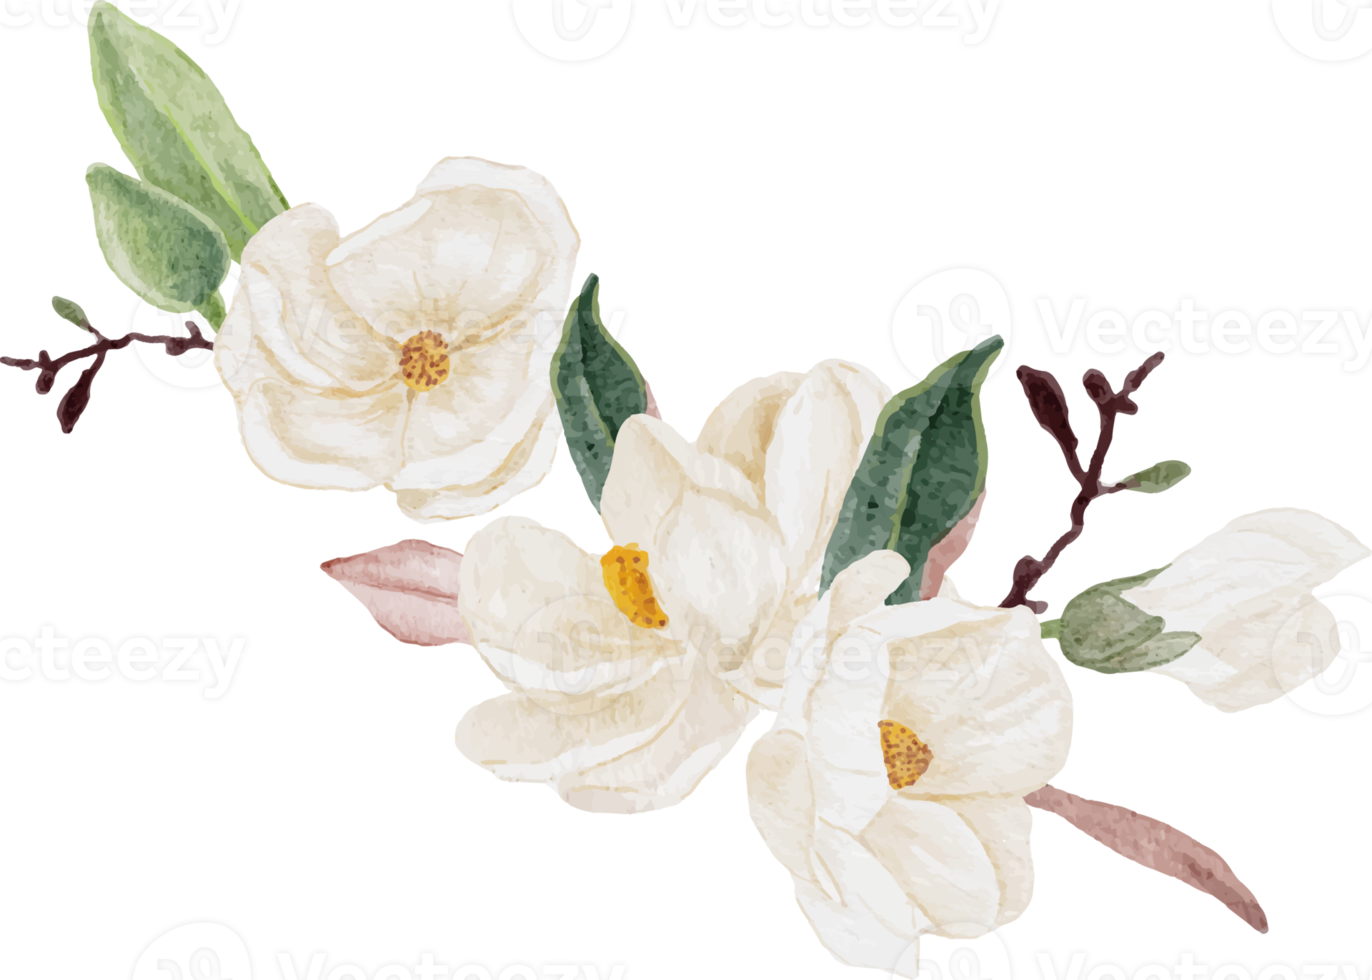 ramo de flores y hojas de magnolia blanca acuarela clipart png